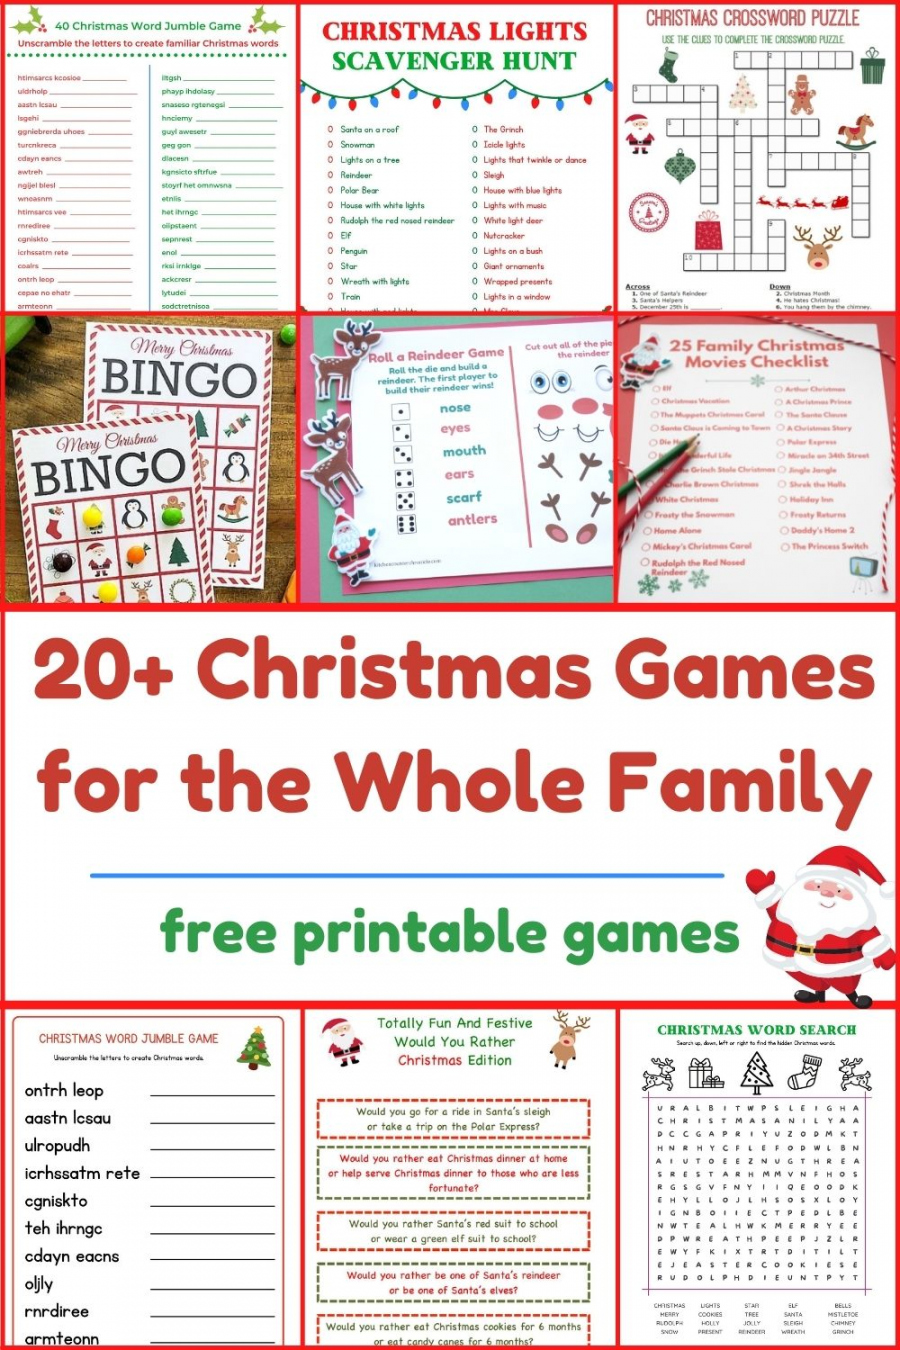 Christmas Games Free Printable - Printable - + Free Printable Christmas Games for the Whole Family